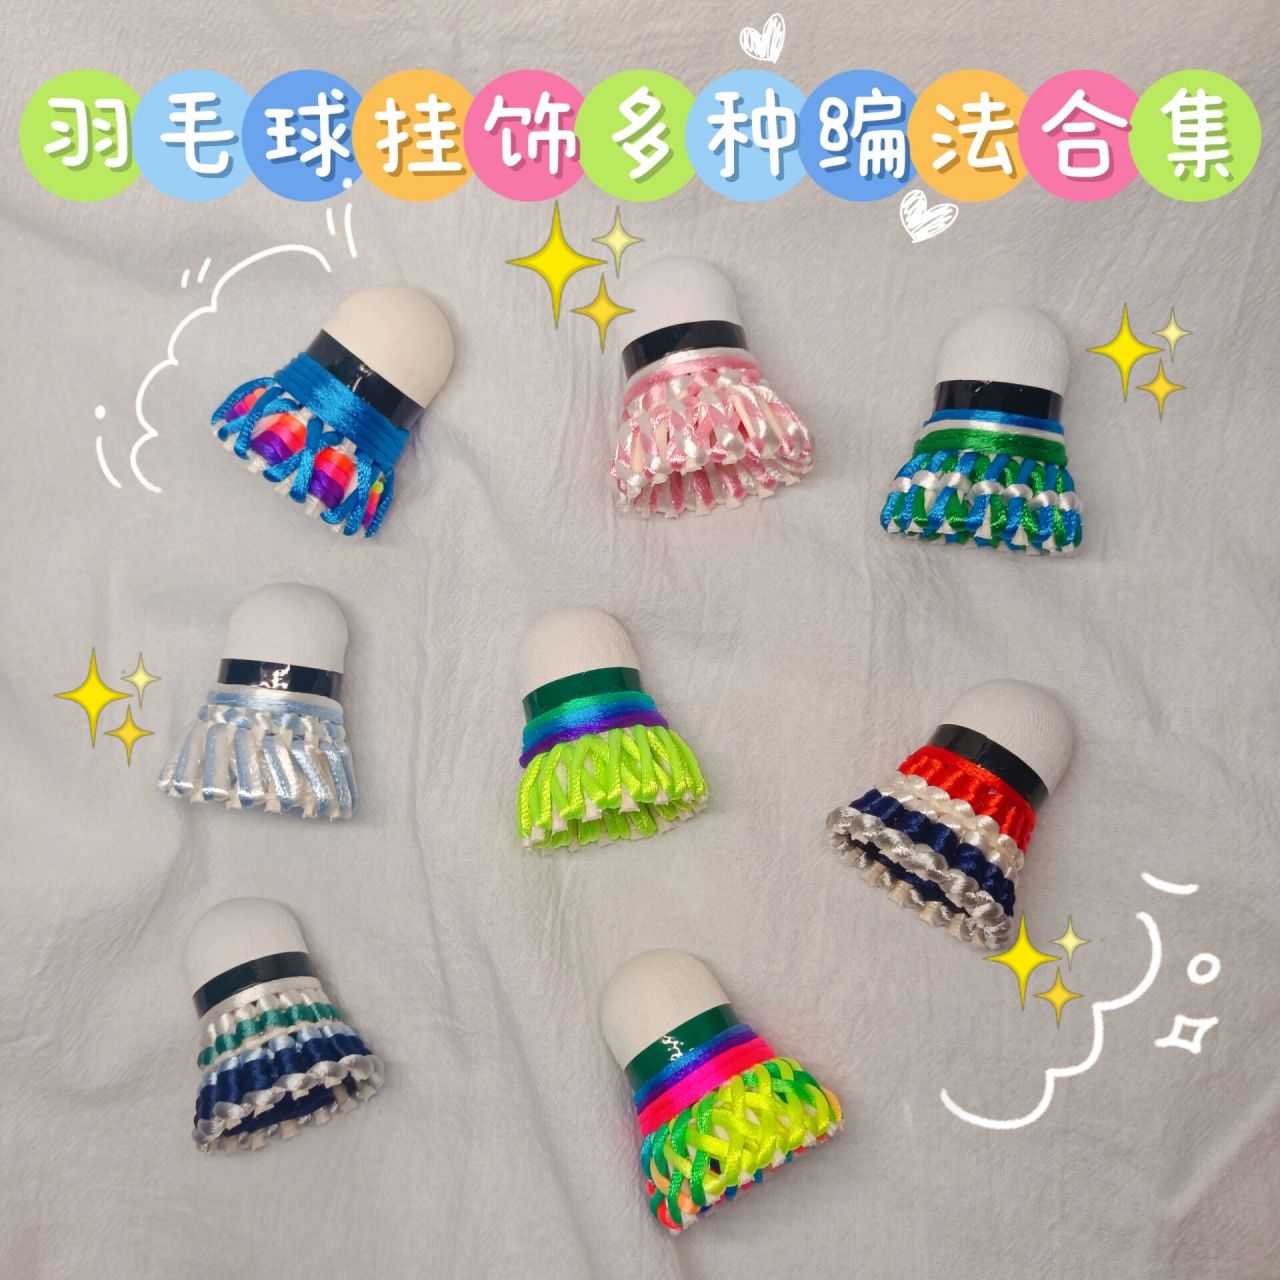 给大家分享一下用这种彩绳经常编的几种羽毛球挂饰的编织方法,不值览